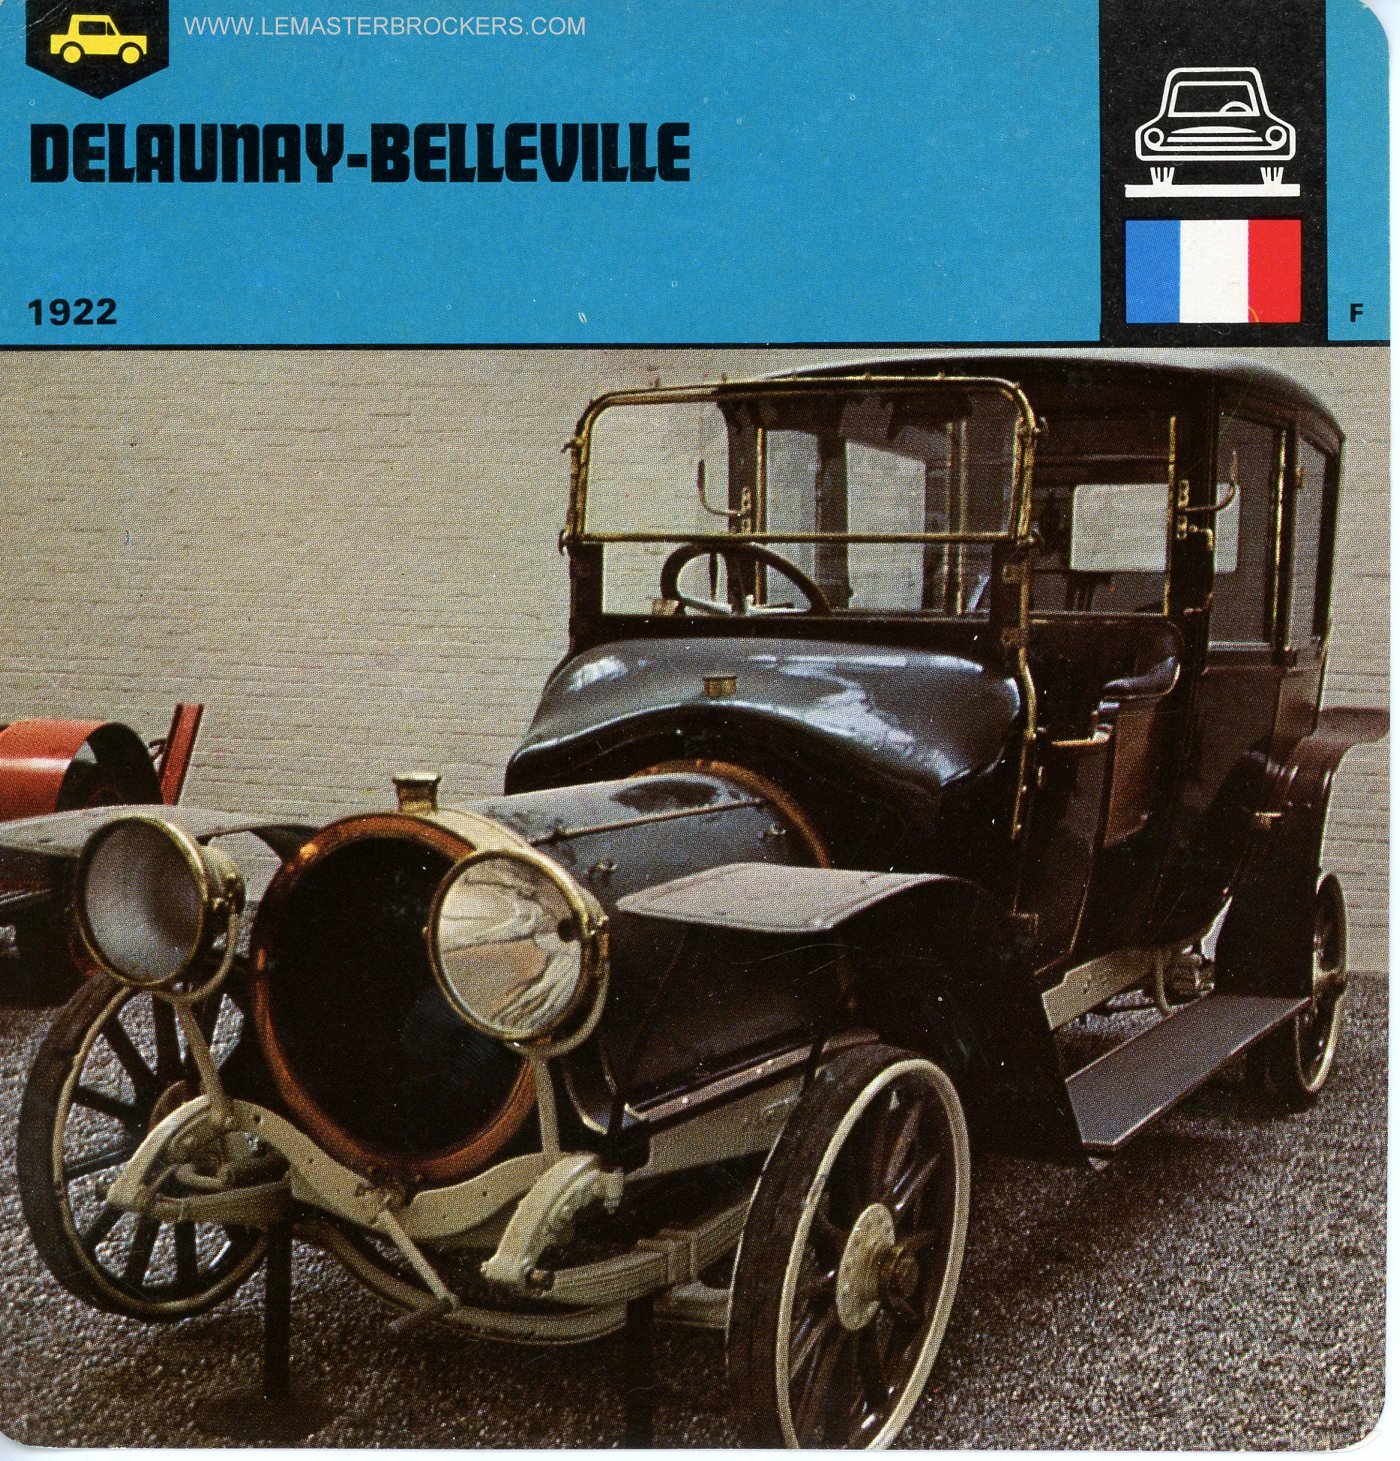 FICHE AUTO DEMAUNAY BELLEVILLE 1922